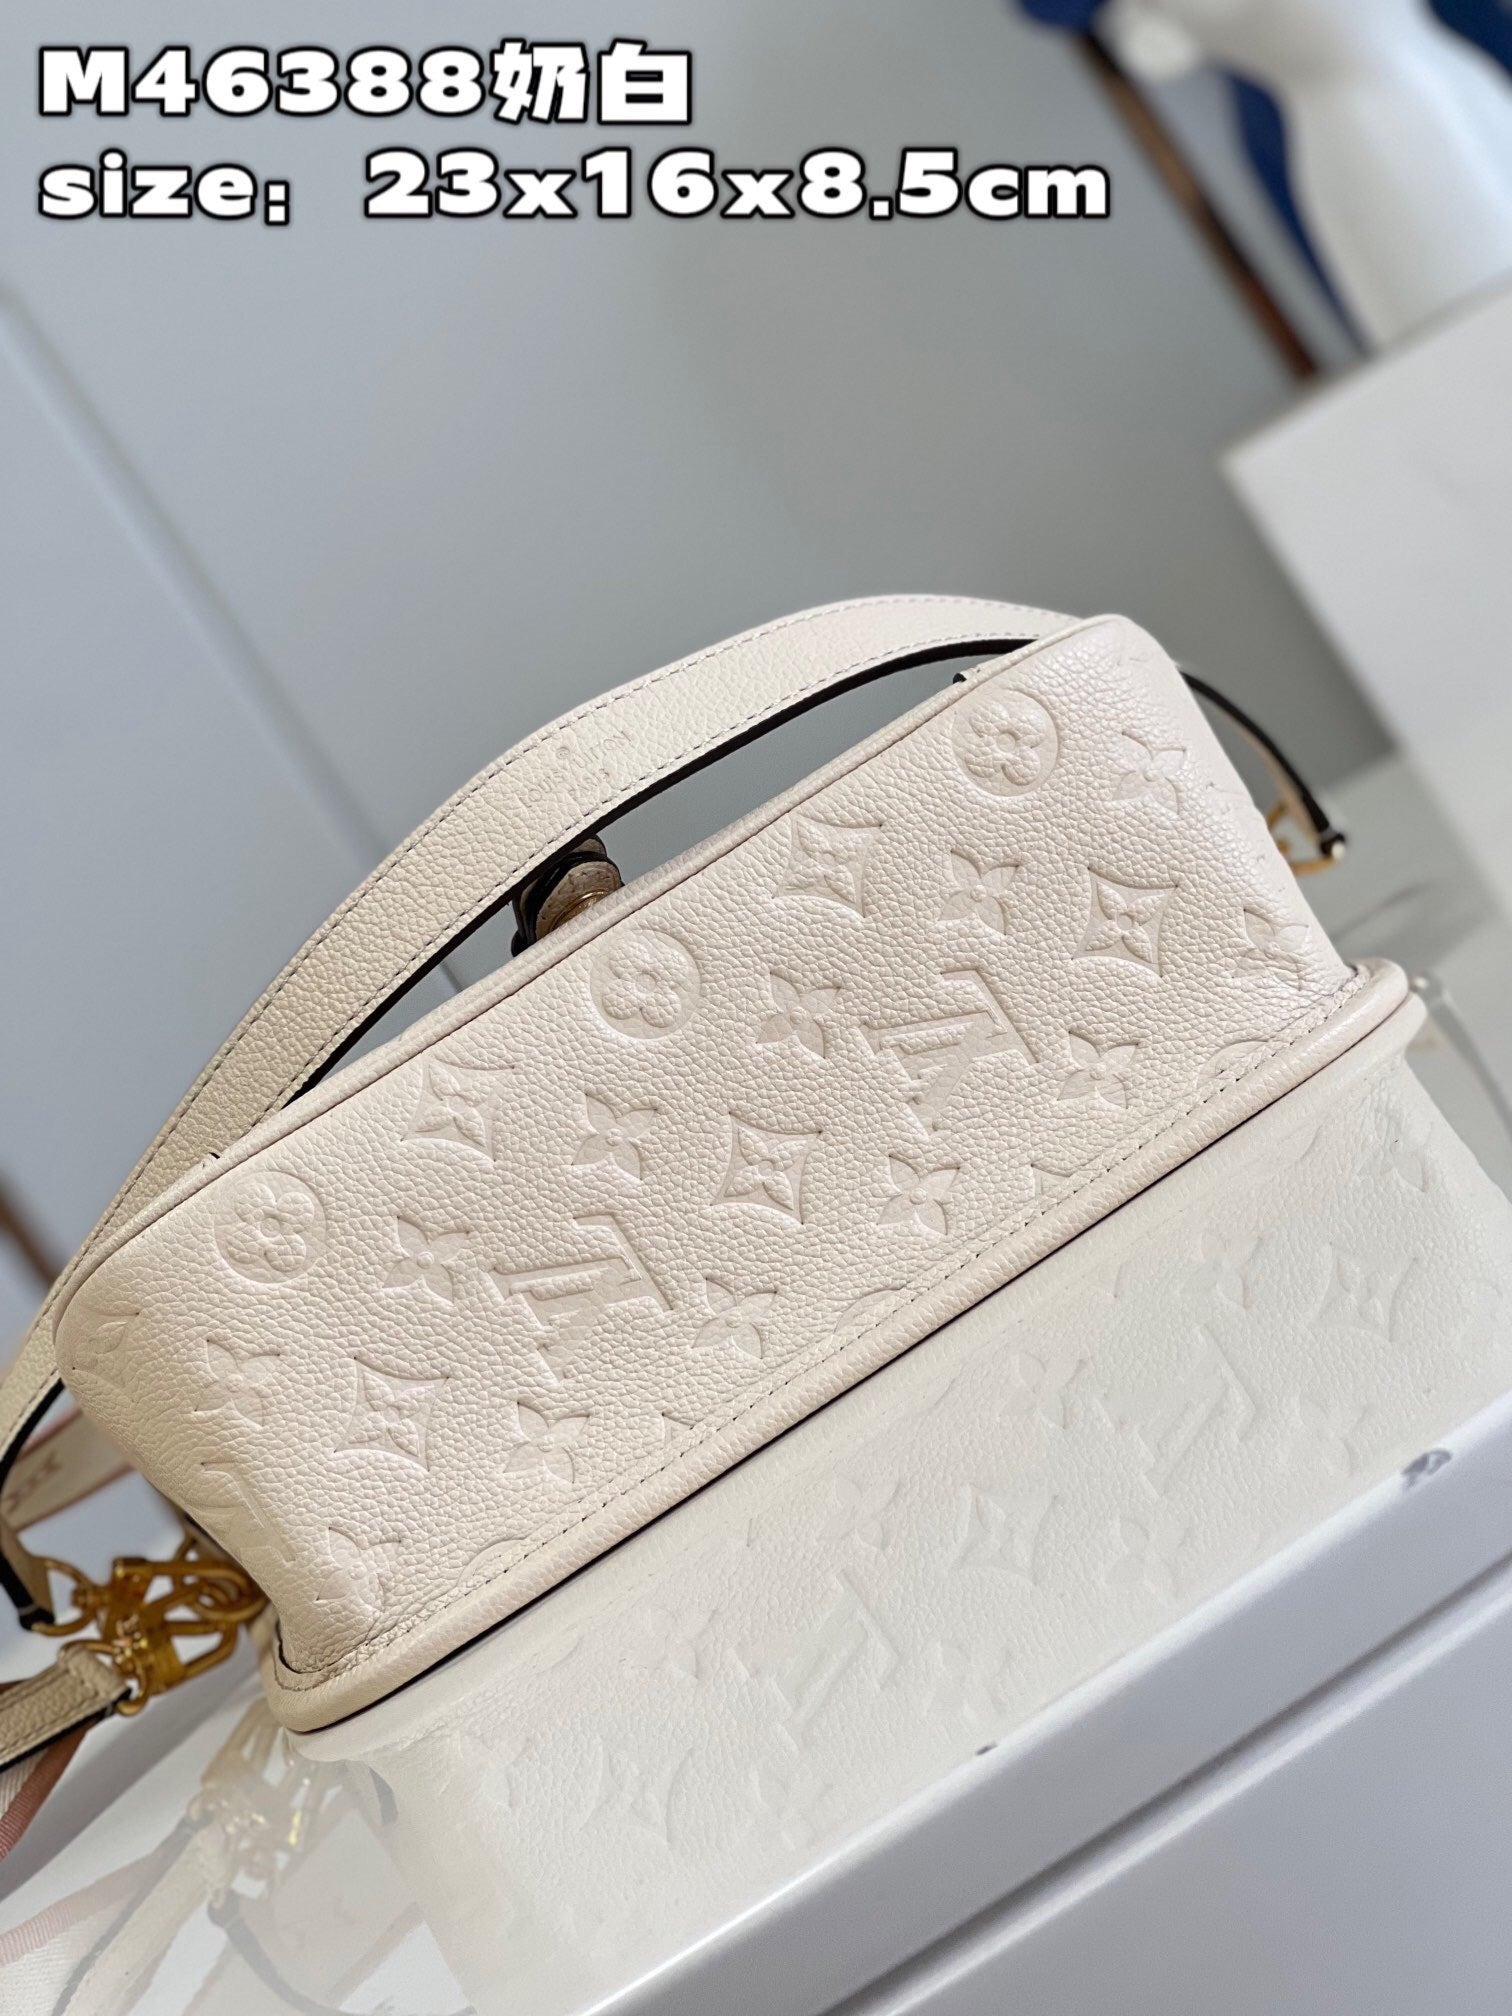 Louis Vuitton Diane Empreinte in Cream 